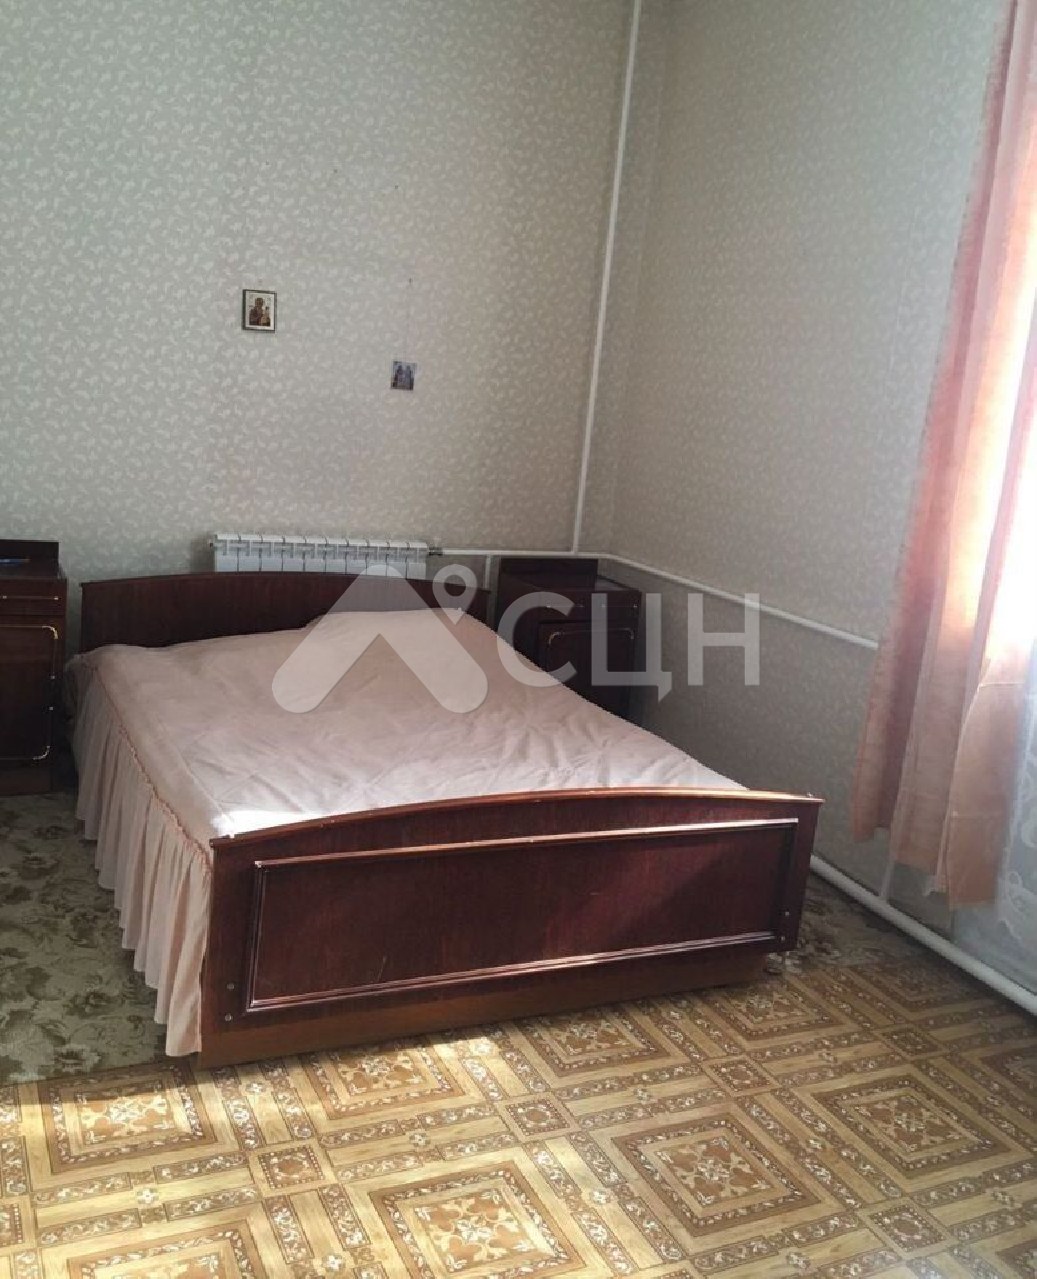 домклик саров квартиры
: Г. Саров, проспект Ленина, 8, 3-комн квартира, этаж 1 из 4, продажа.